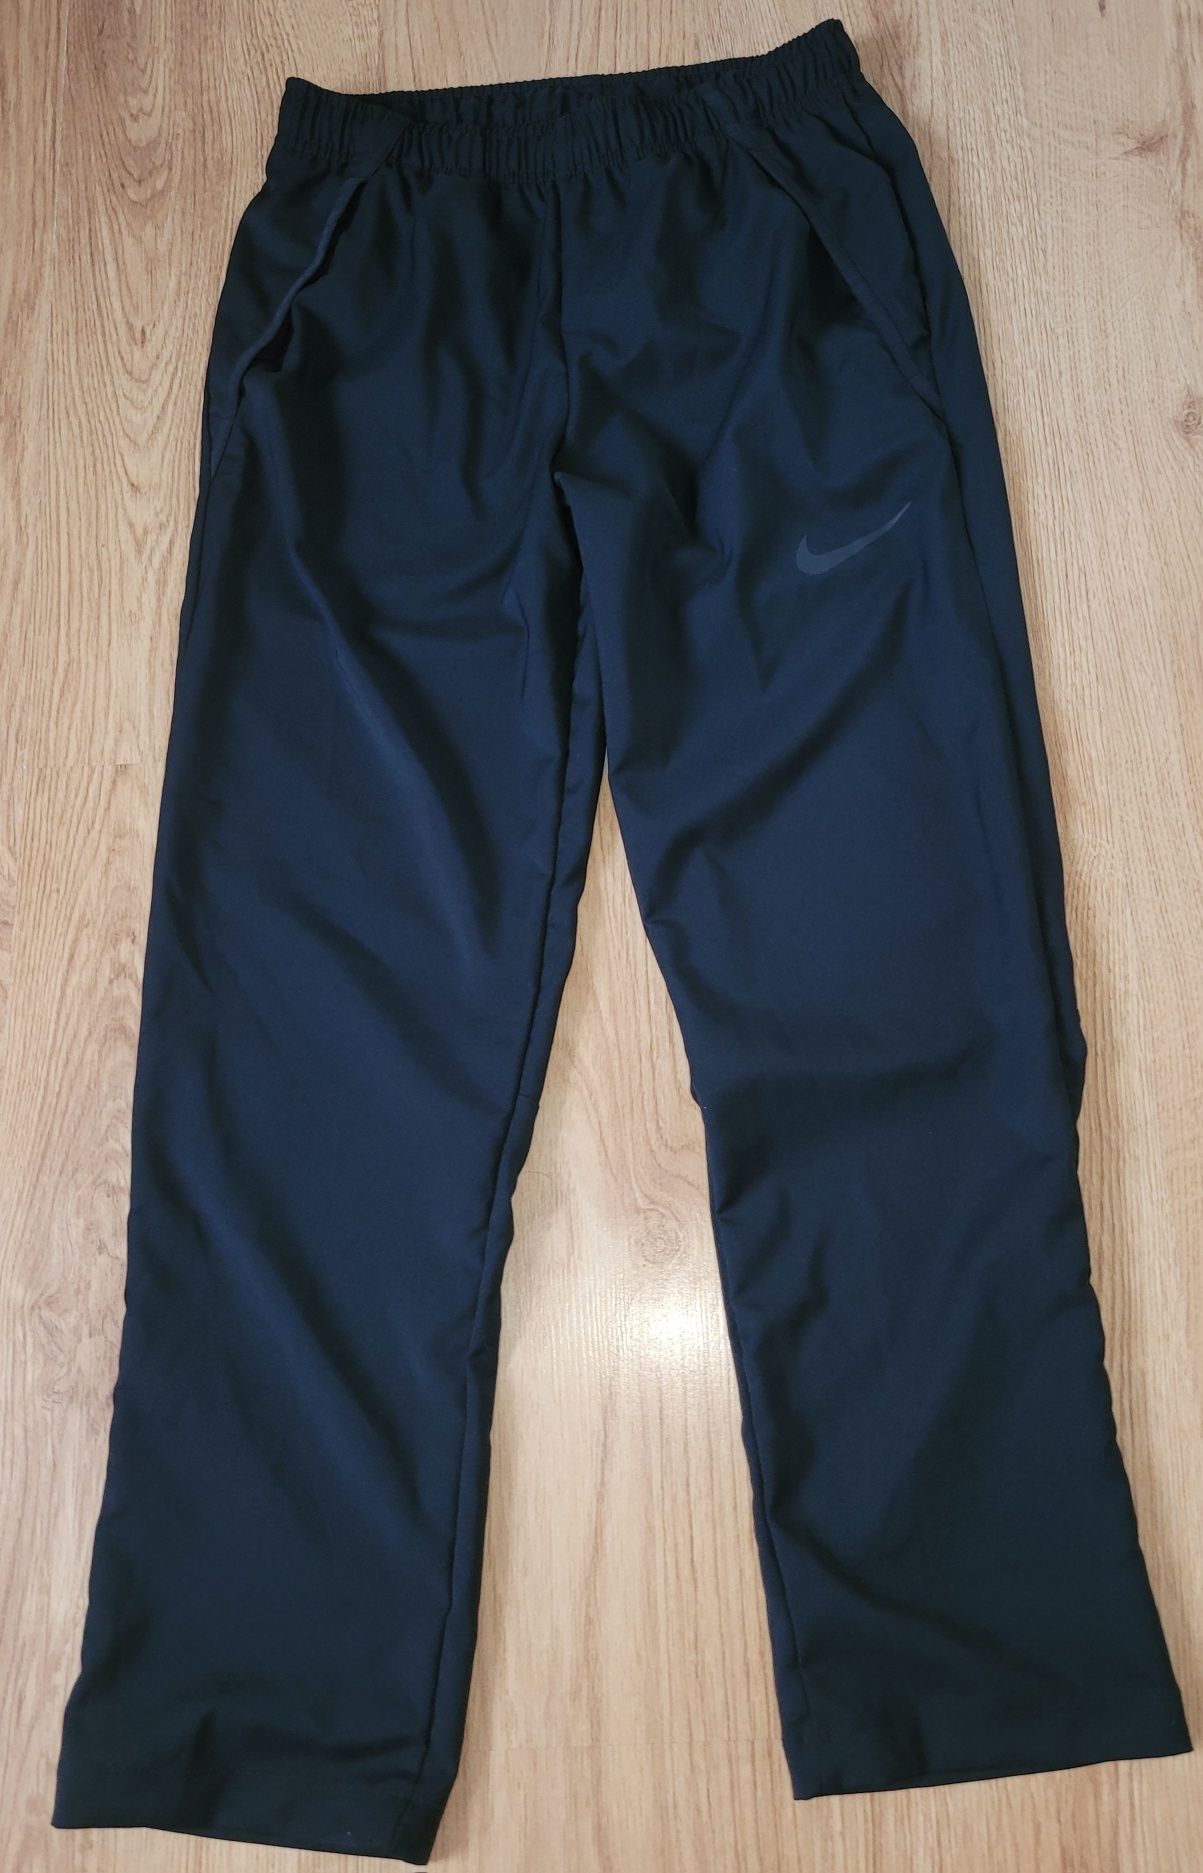 Spodnie dresowe Spodnie dresowe Nike DRI-FIT 165 na 13-14